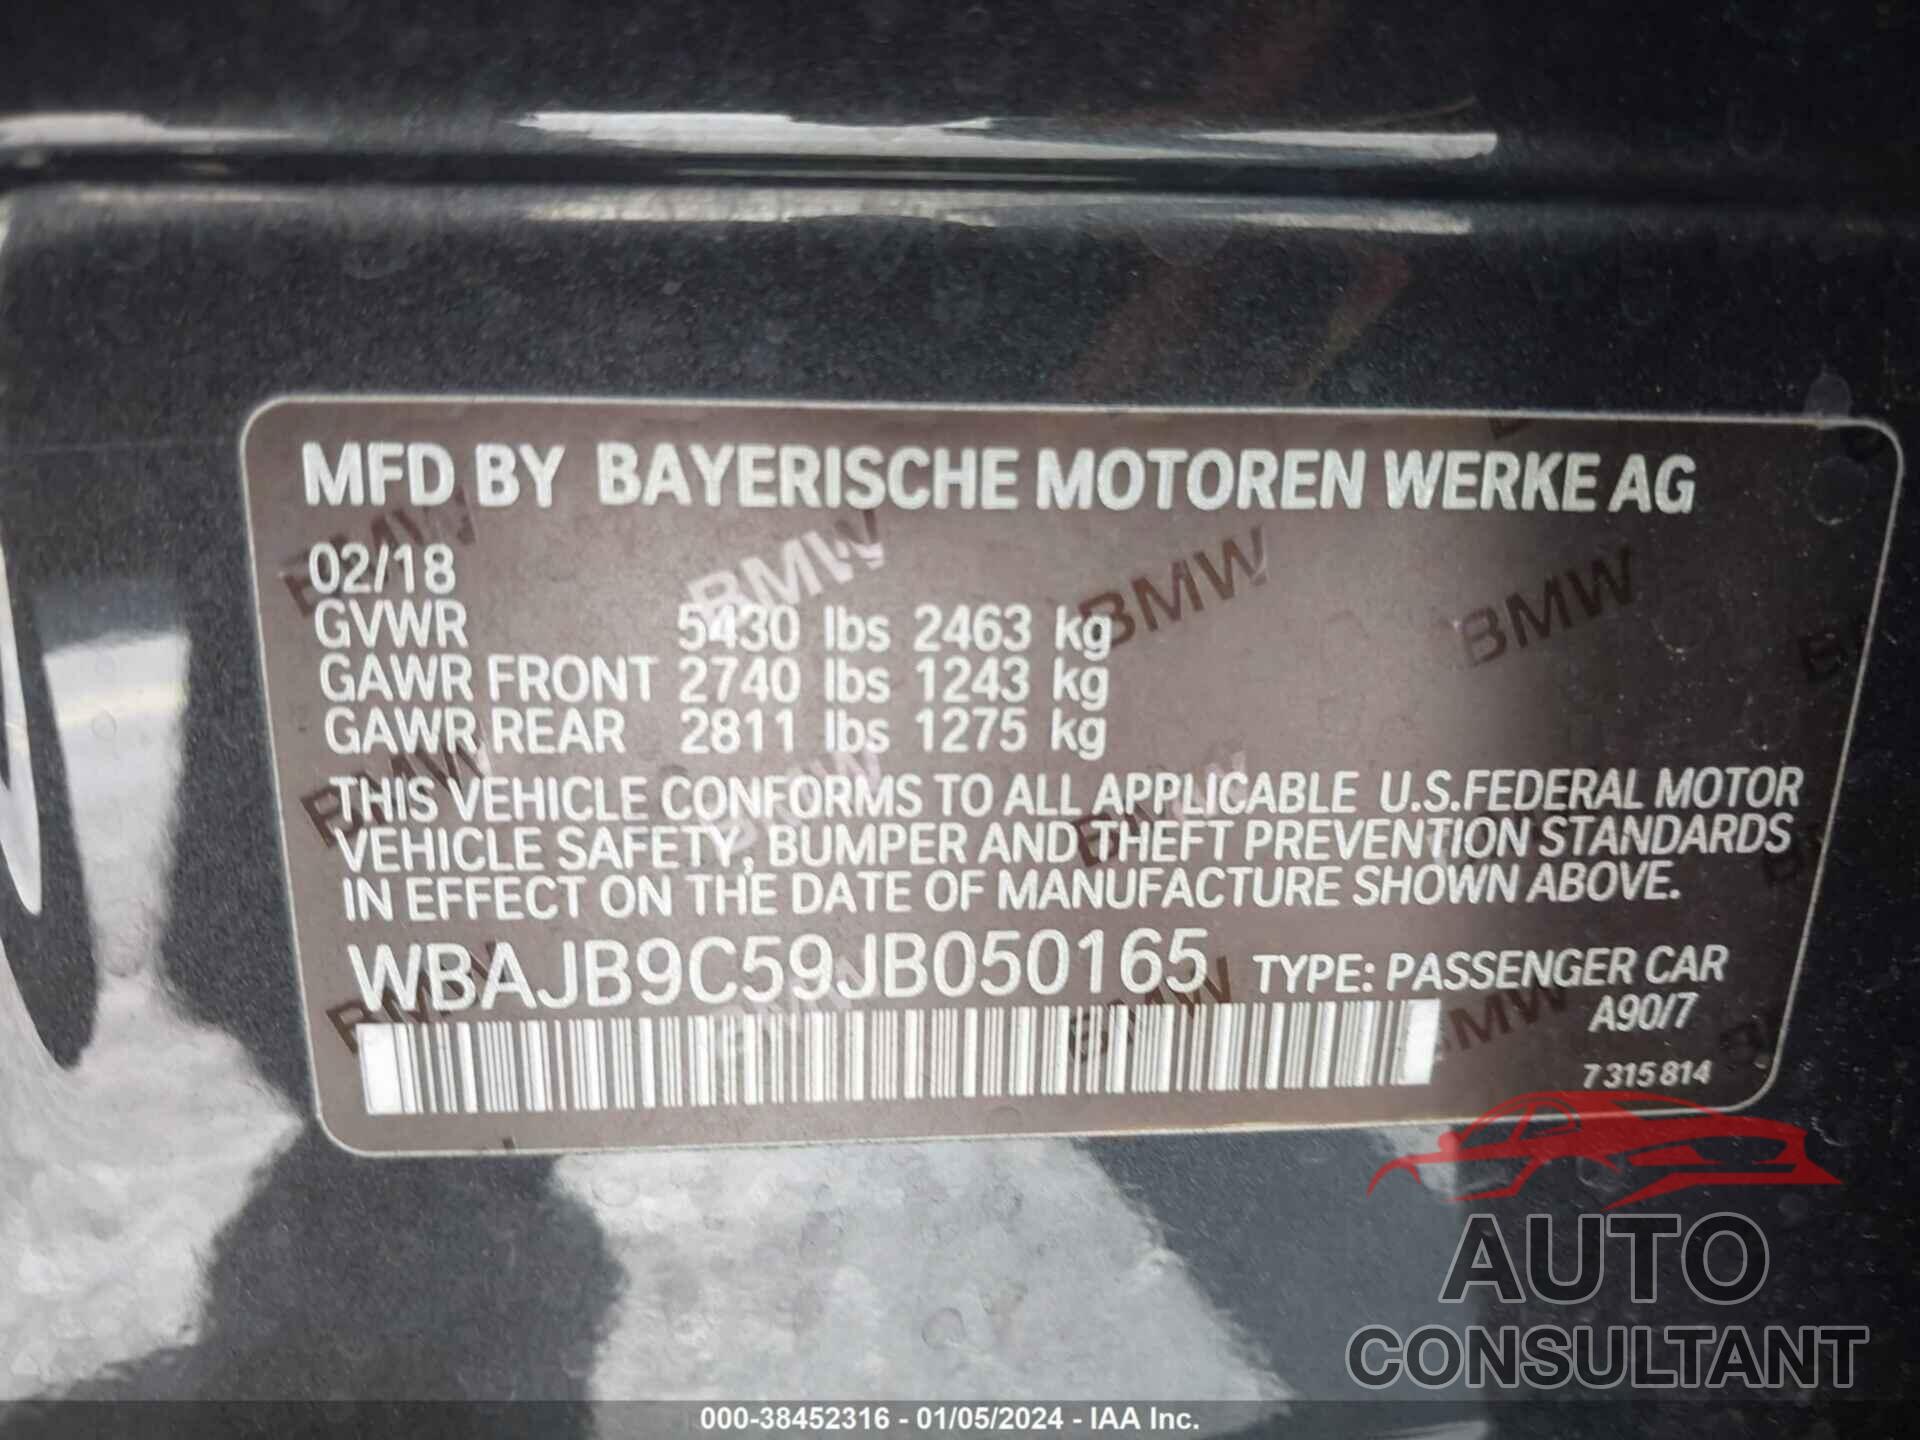 BMW M550I 2018 - WBAJB9C59JB050165